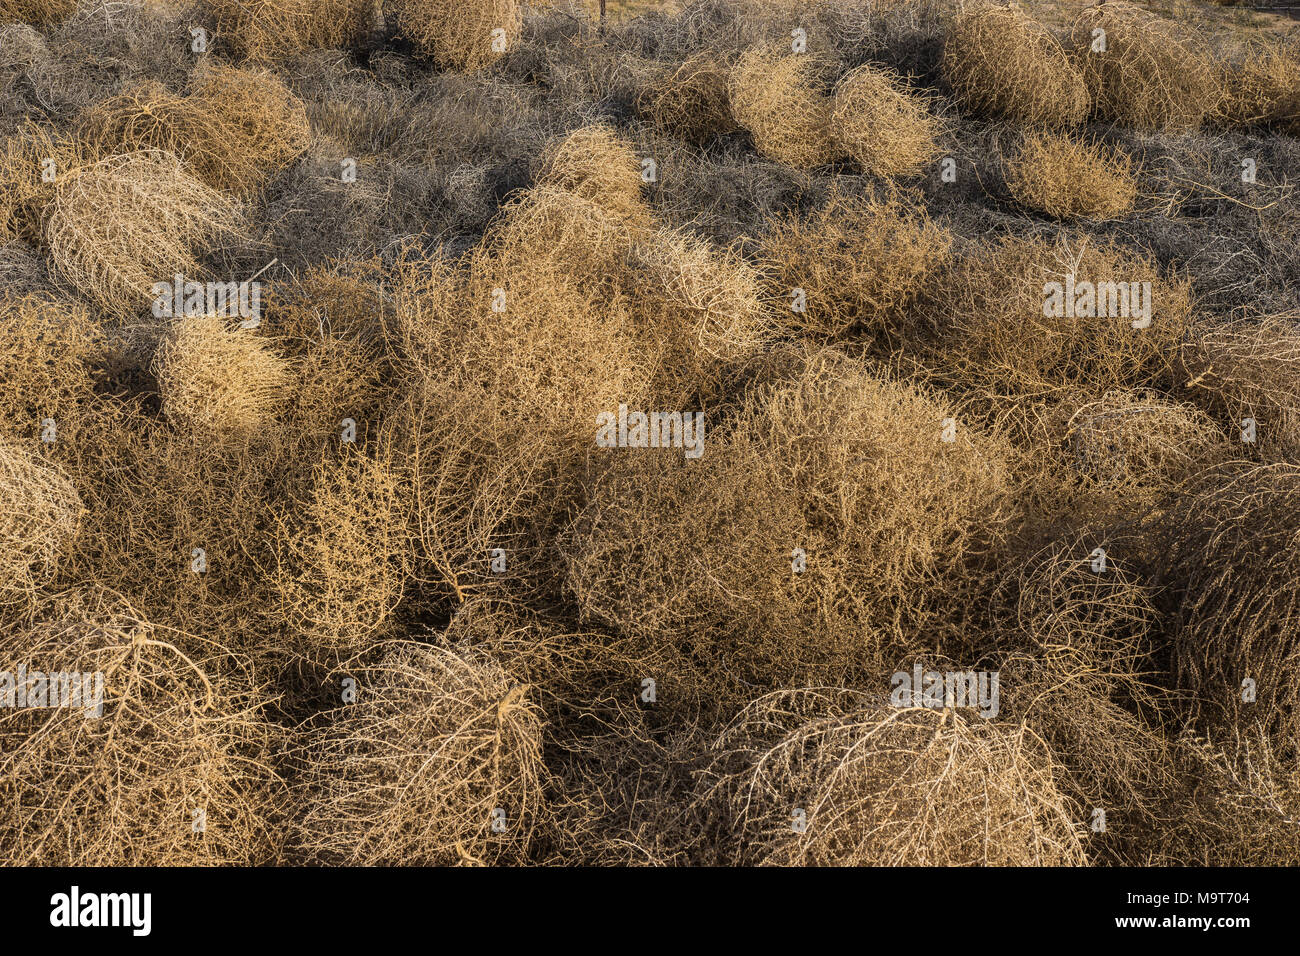 Grau und Braun tumbleweeds in einen großen Haufen in einer Wüste Wüste gesammelt. Stockfoto